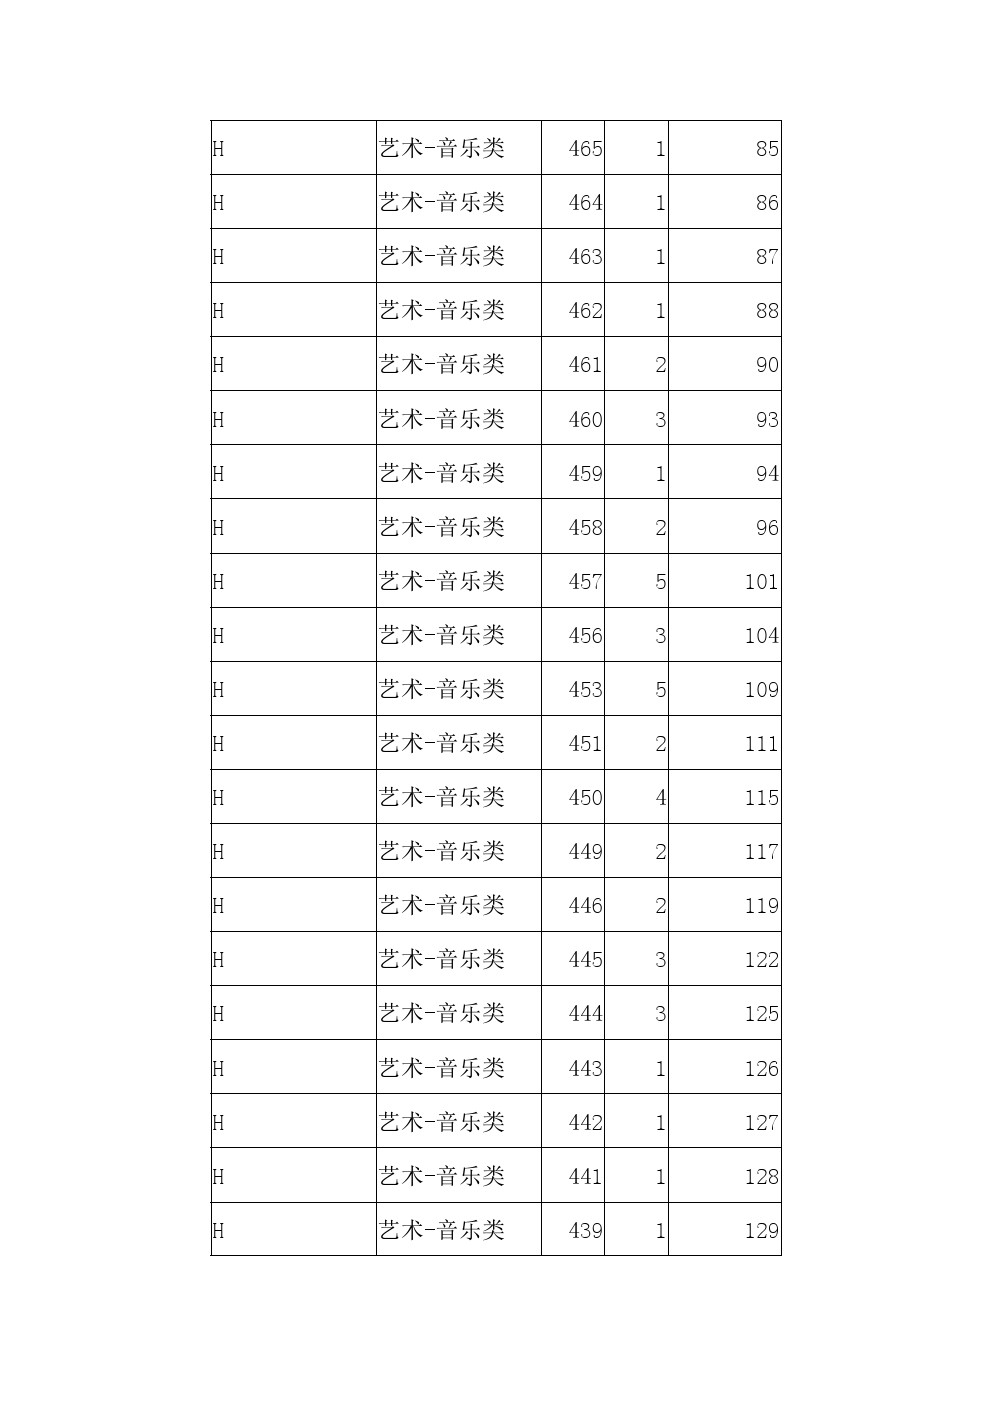 2021年河北省高职单招考试八类音乐类一分一档表 